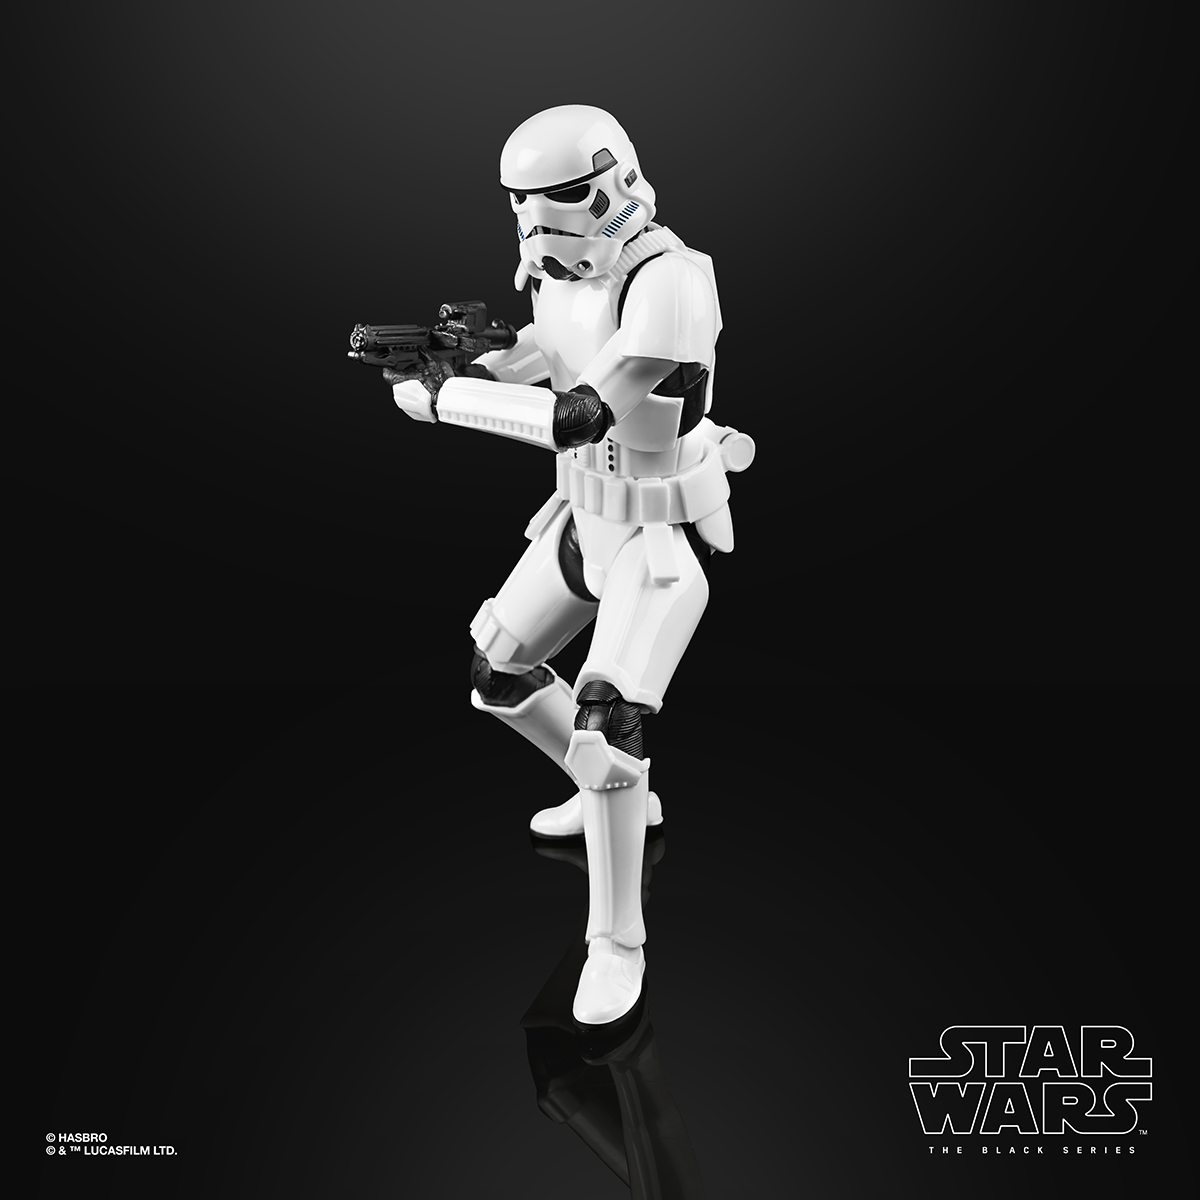 Star Wars The Black Series 6 Inch Imperial Stormtrooper Figure Oop 2